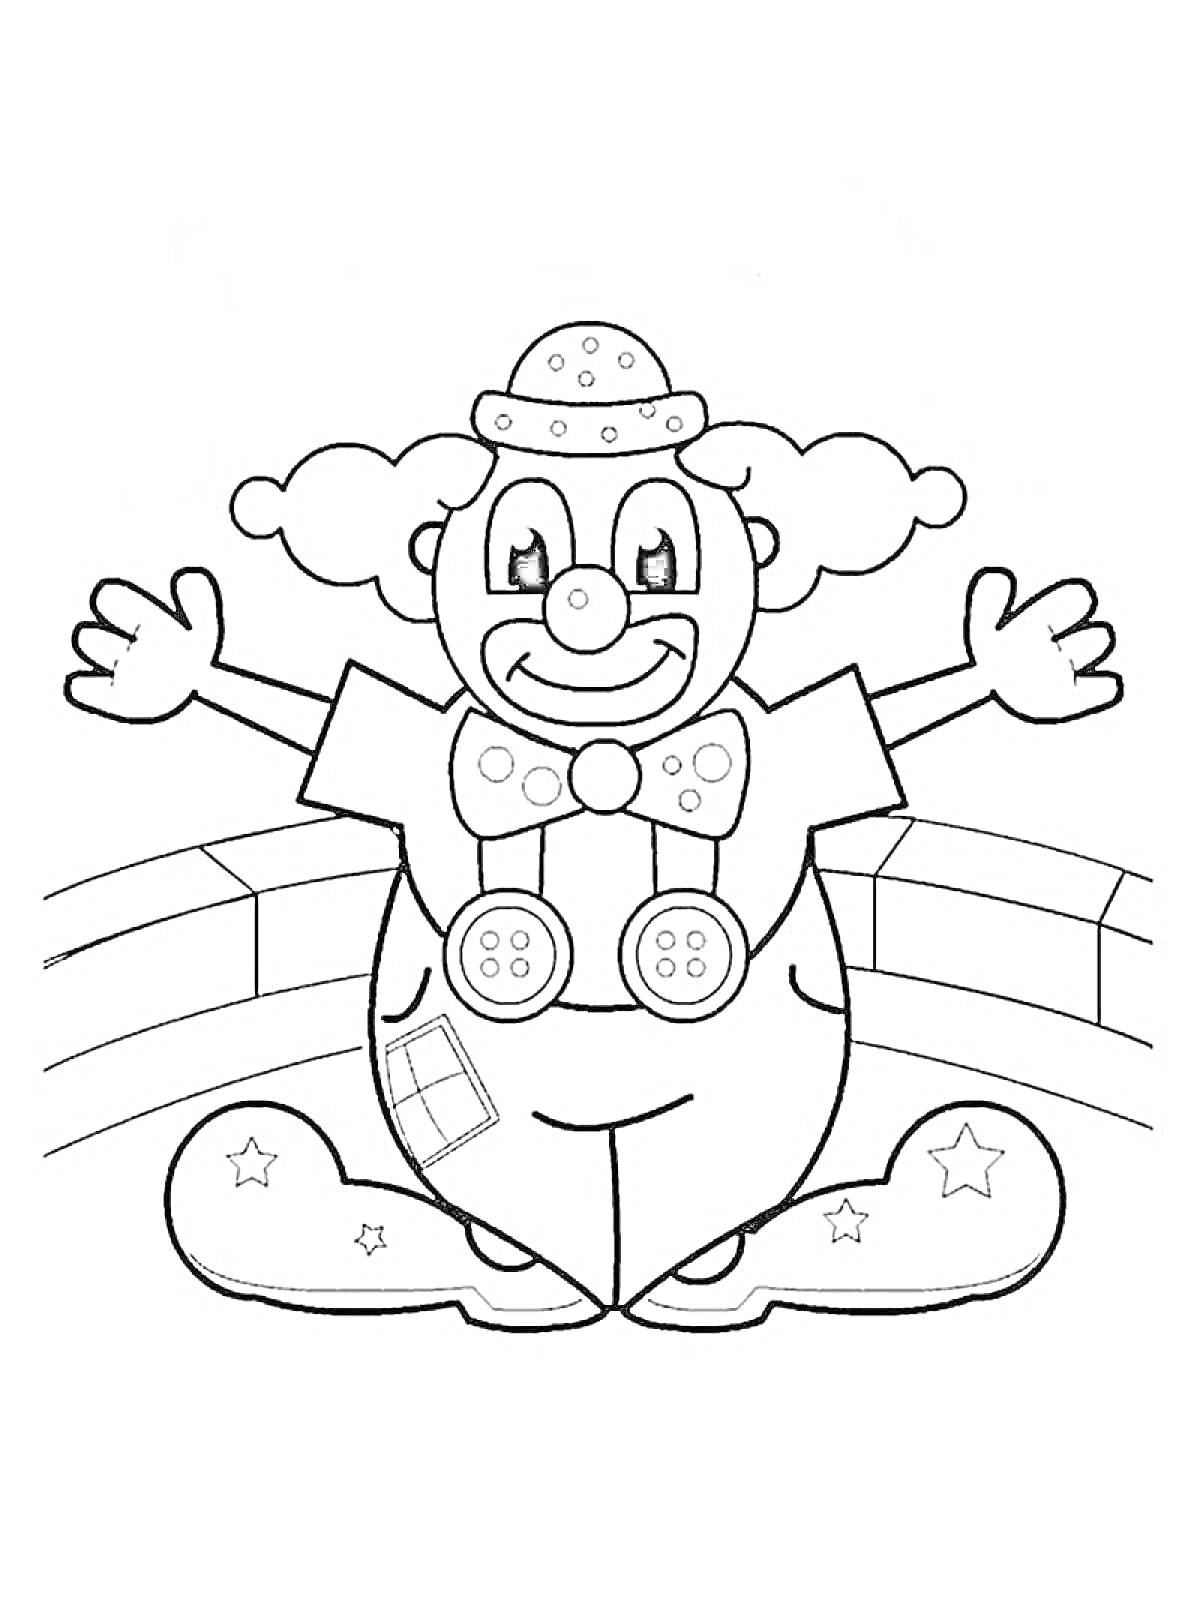 Раскраска Клоун с поднятыми руками в мультяшном стиле, в круглом шляпе, с большим бантом, крупными пуговицами, парадными ботинками и фоном-тротуаром.